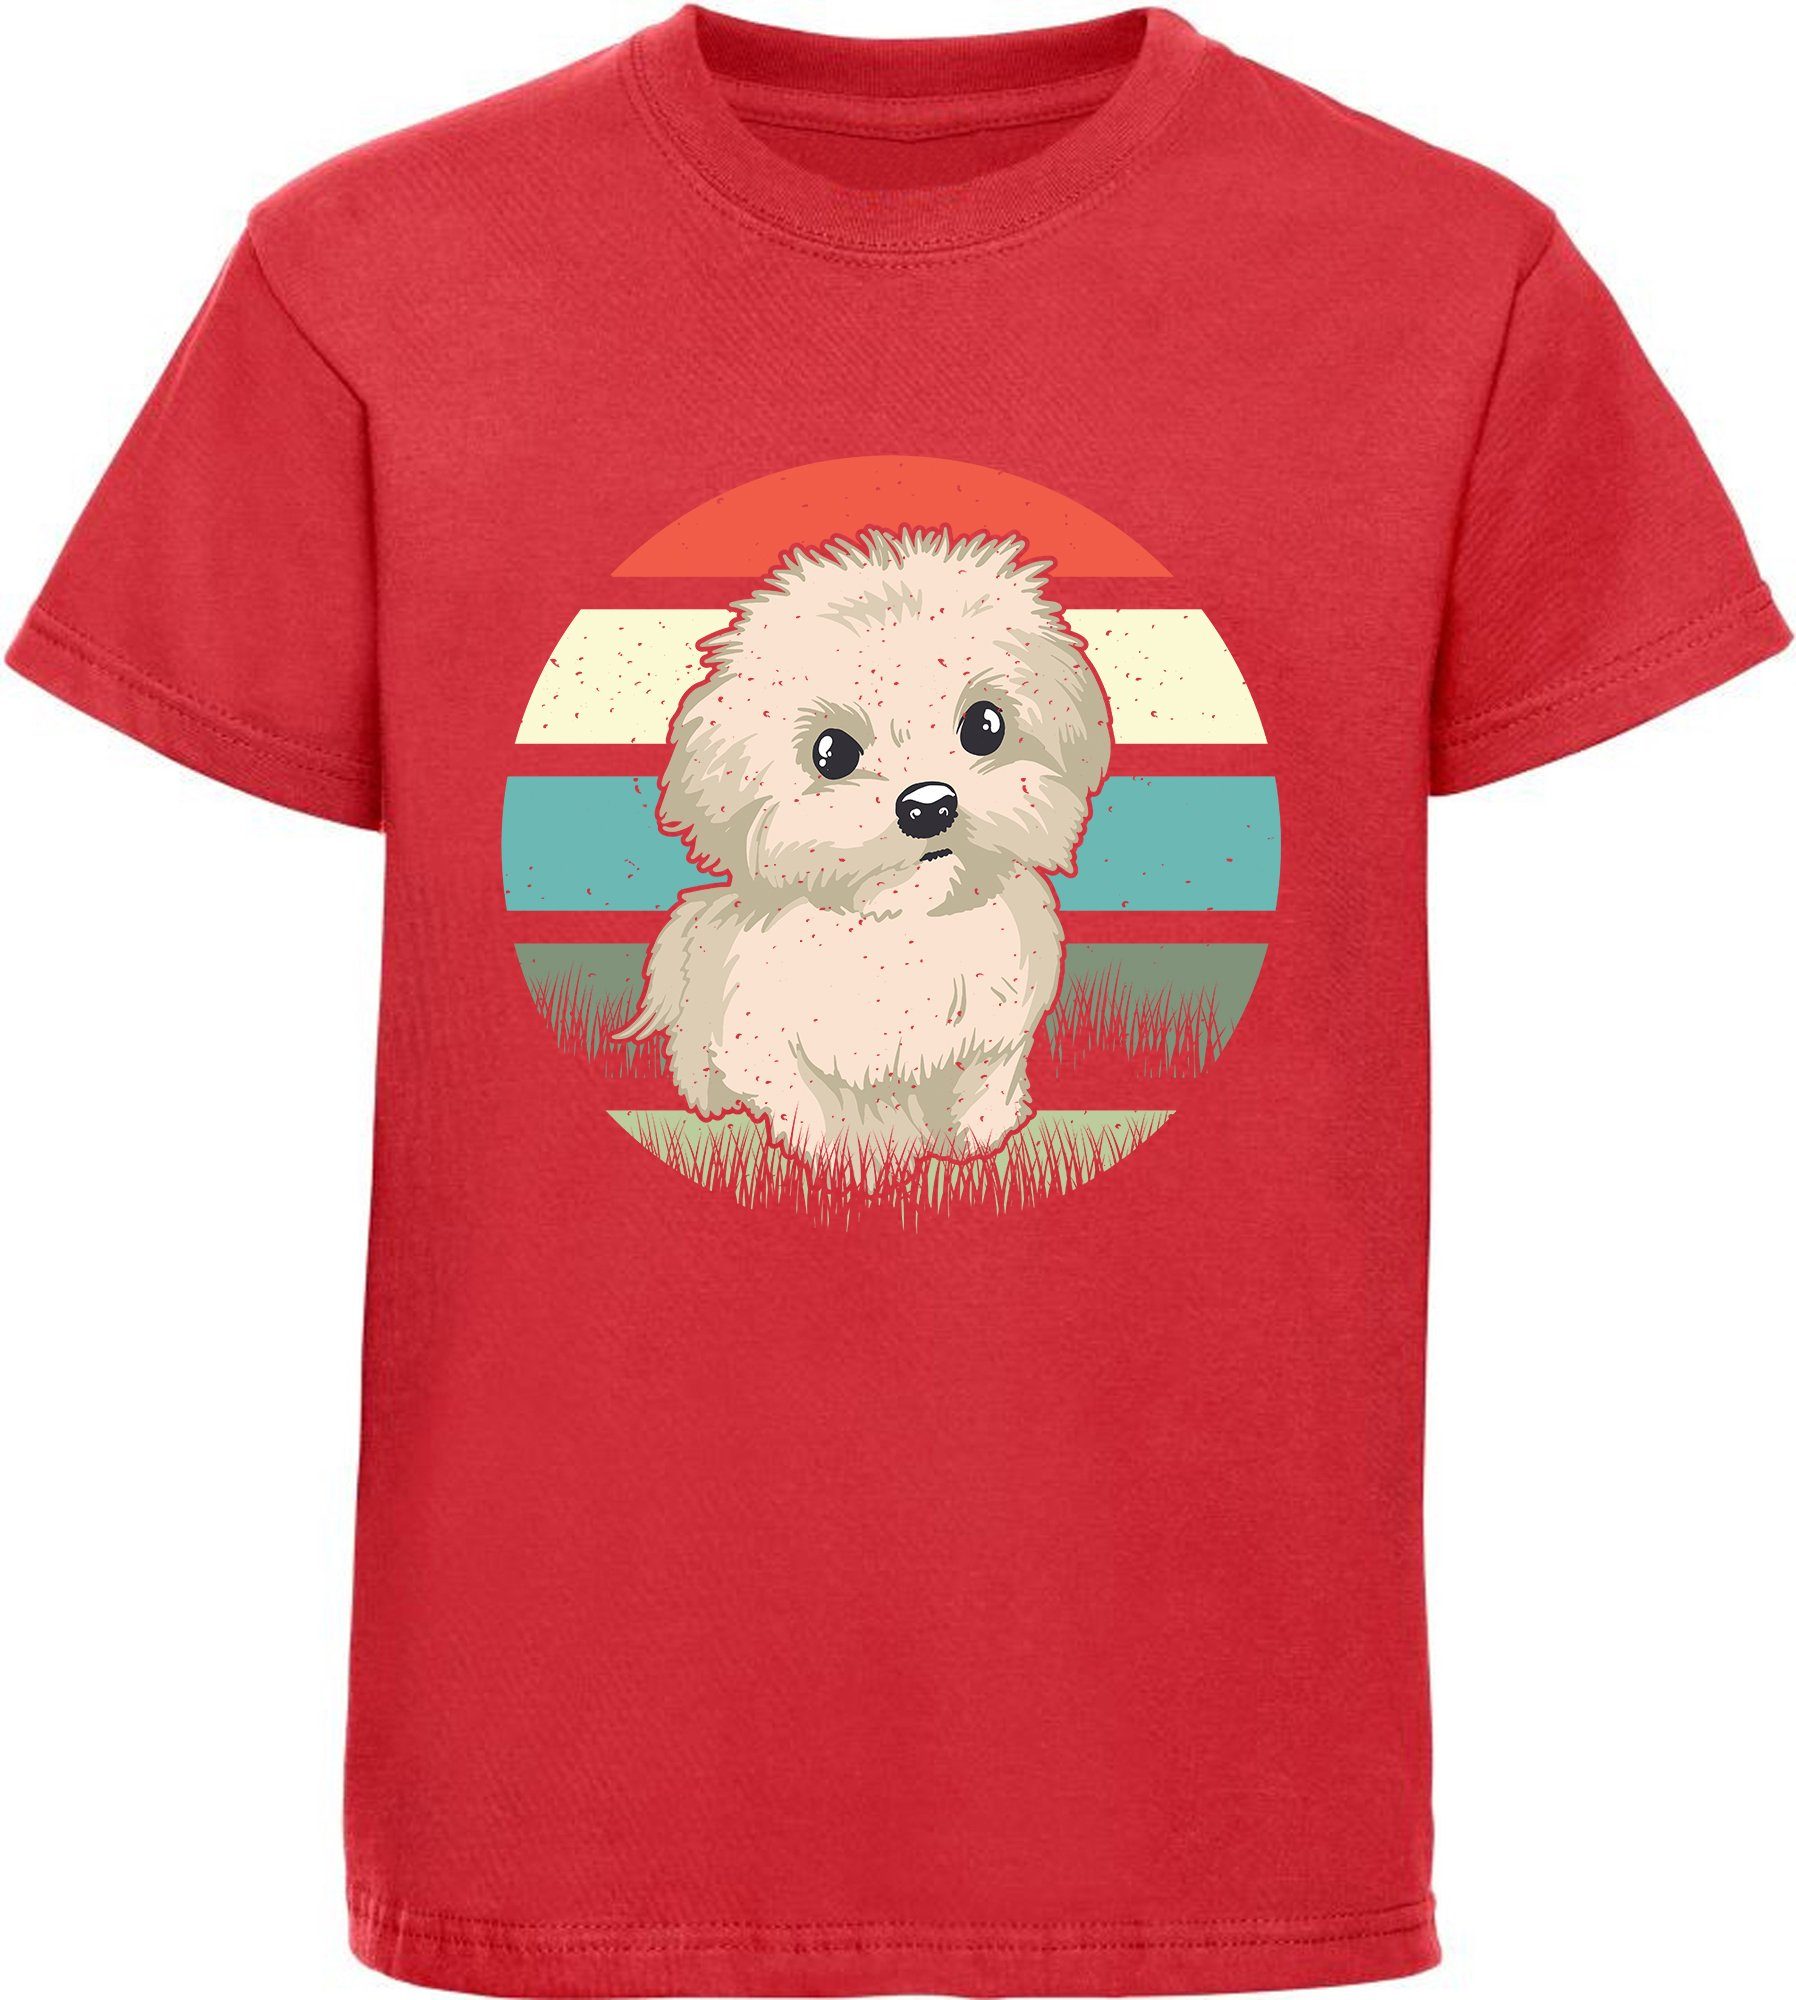 MyDesign24 Print-Shirt Kinder Hunde T-Shirt bedruckt - Retro Malteser Welpen Baumwollshirt mit Aufdruck, i242 rot | T-Shirts